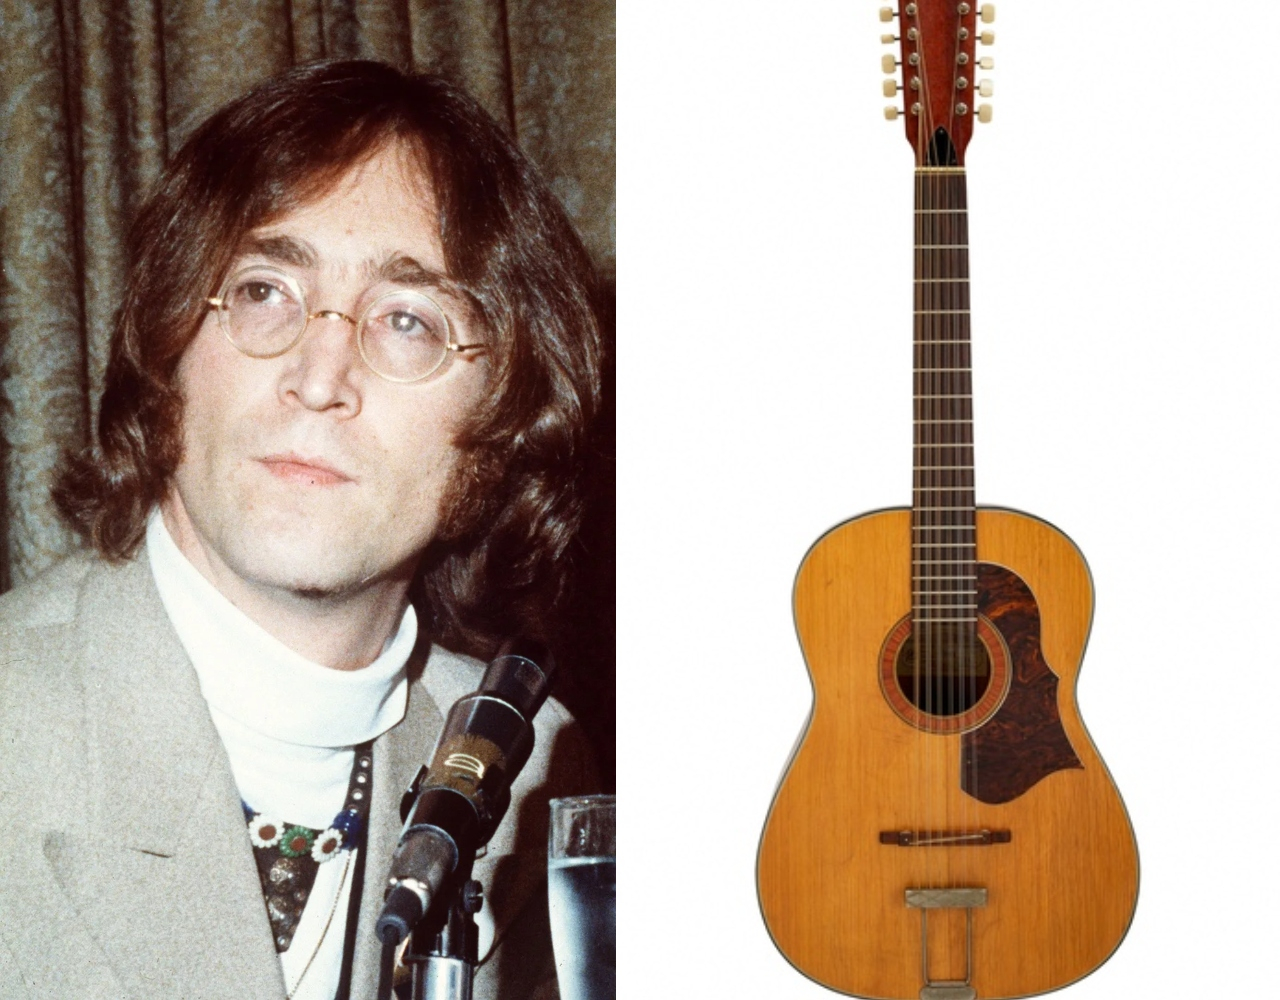 Con Lenonun 50 ildir itən gitarası 800 000 dollara satılacaq - FOTO